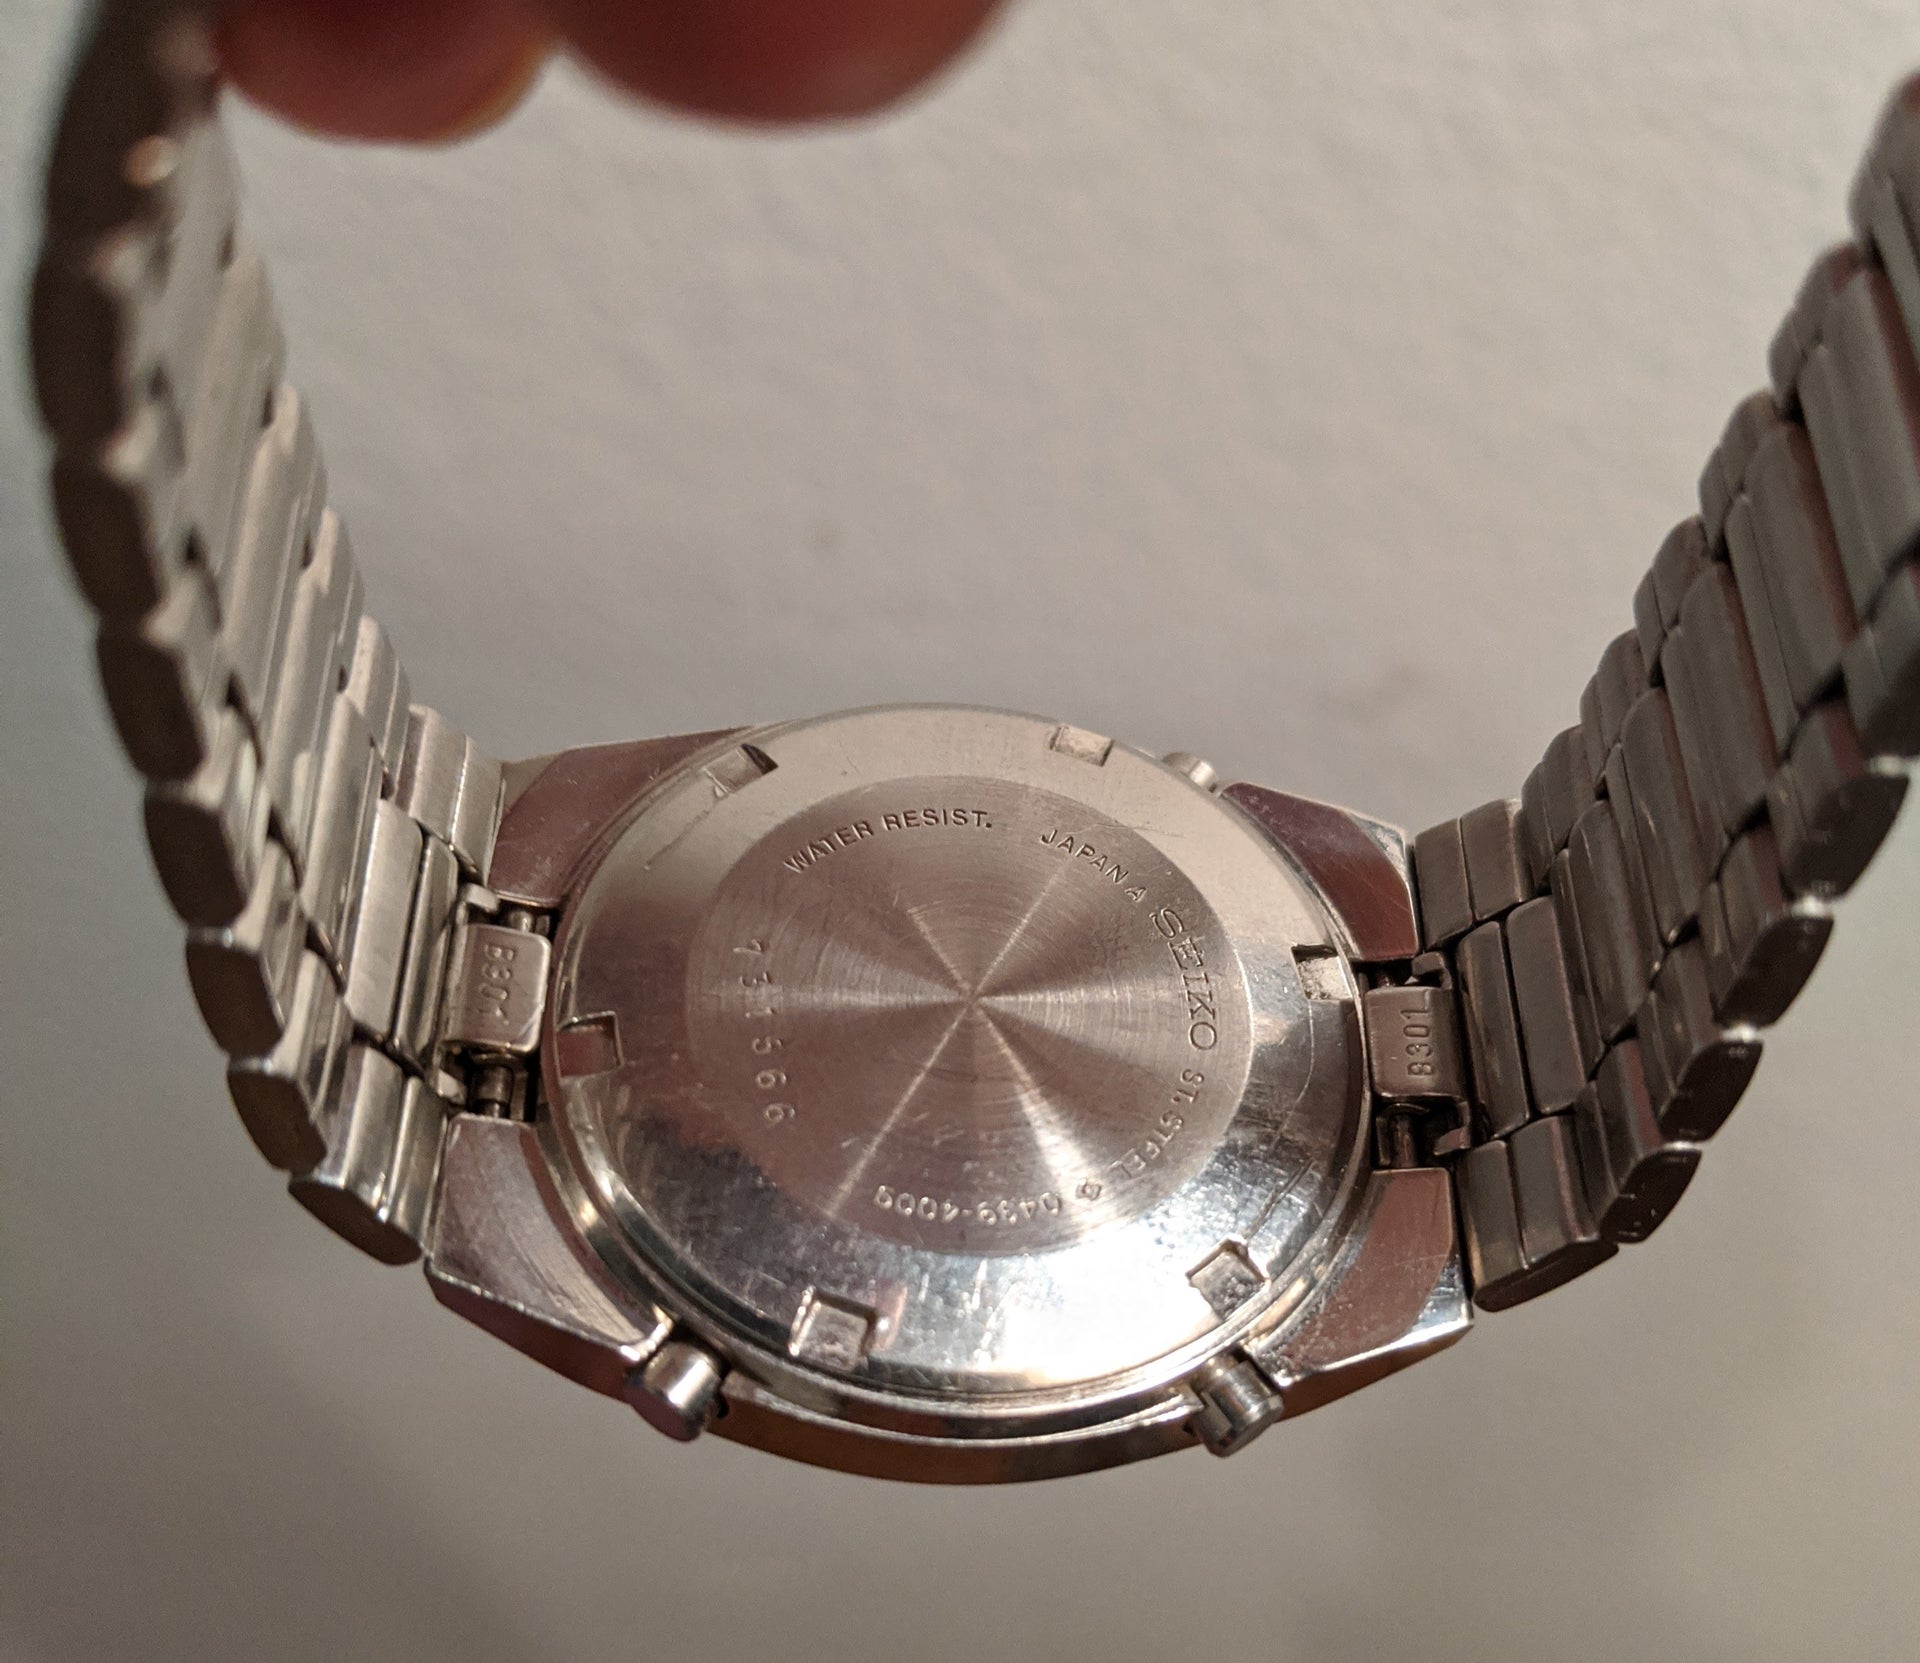 SOLD: Seiko 0439-4009 Vintage Digital Watch - 1977 | WatchUSeek Watch Forums